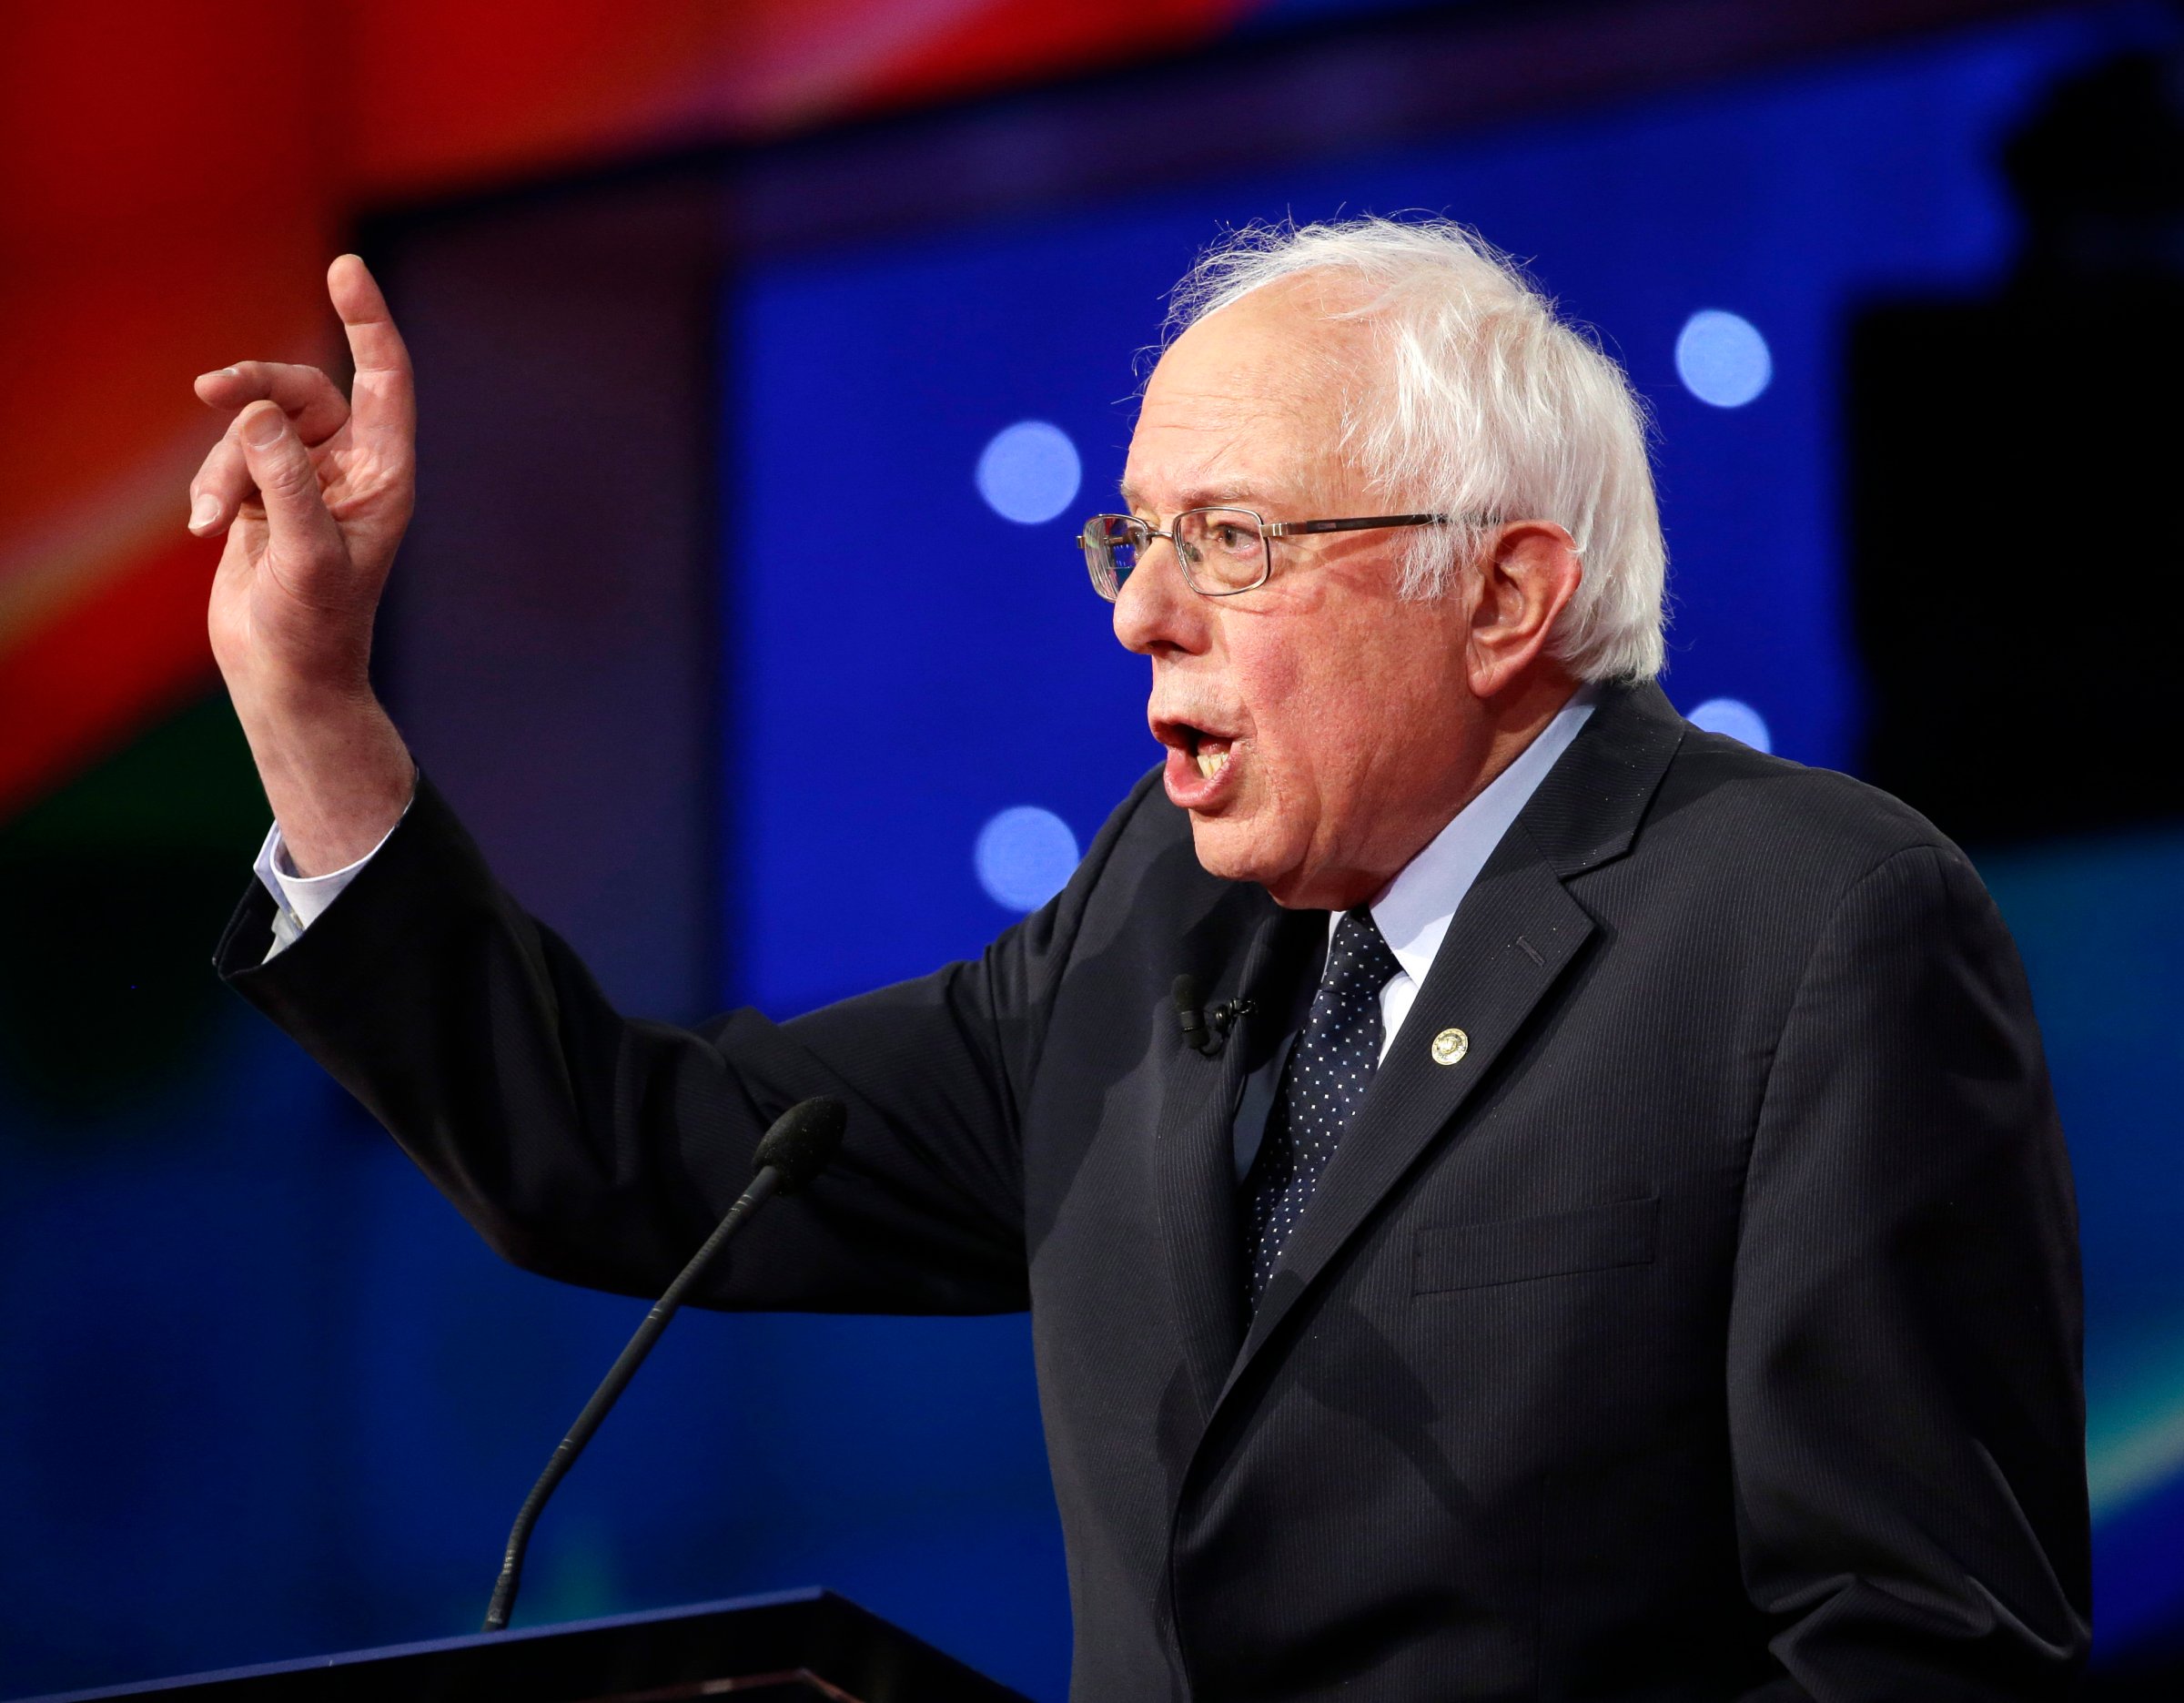 Bernie Sanders speaks during the Democratic Presidential Primary Debate with Hillary Clinton at the Brooklyn Navy Yard on April 14, 2016 in Brooklyn, N.Y.